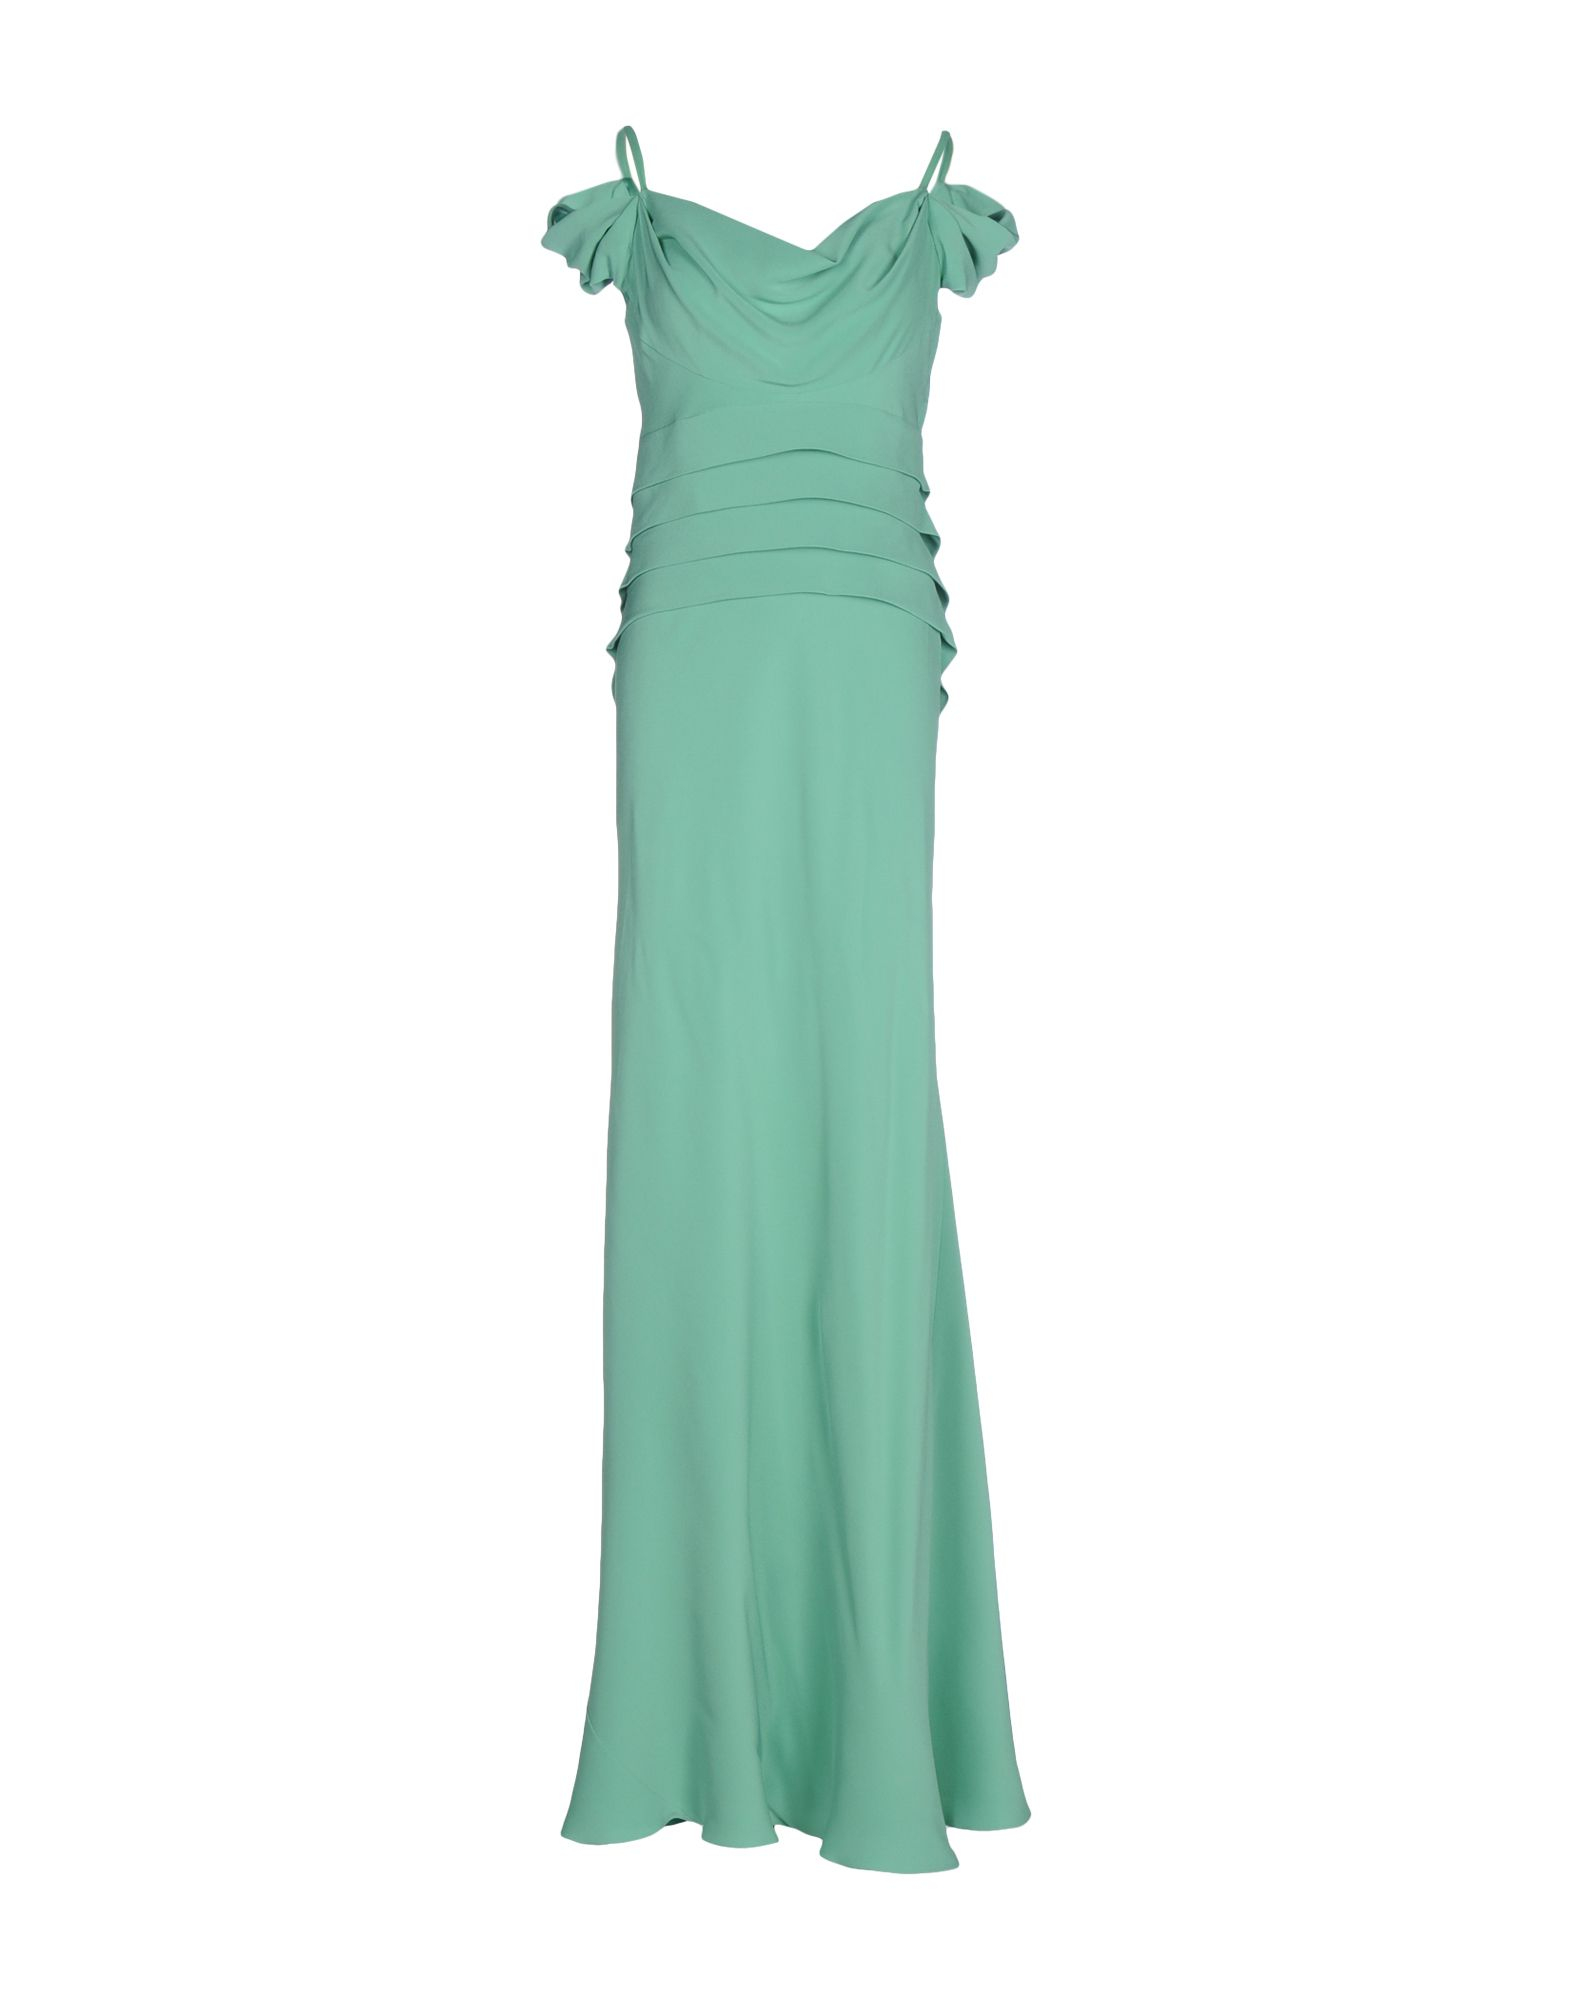 Alberta Ferretti Long Dress in Light Green (Green) - Lyst